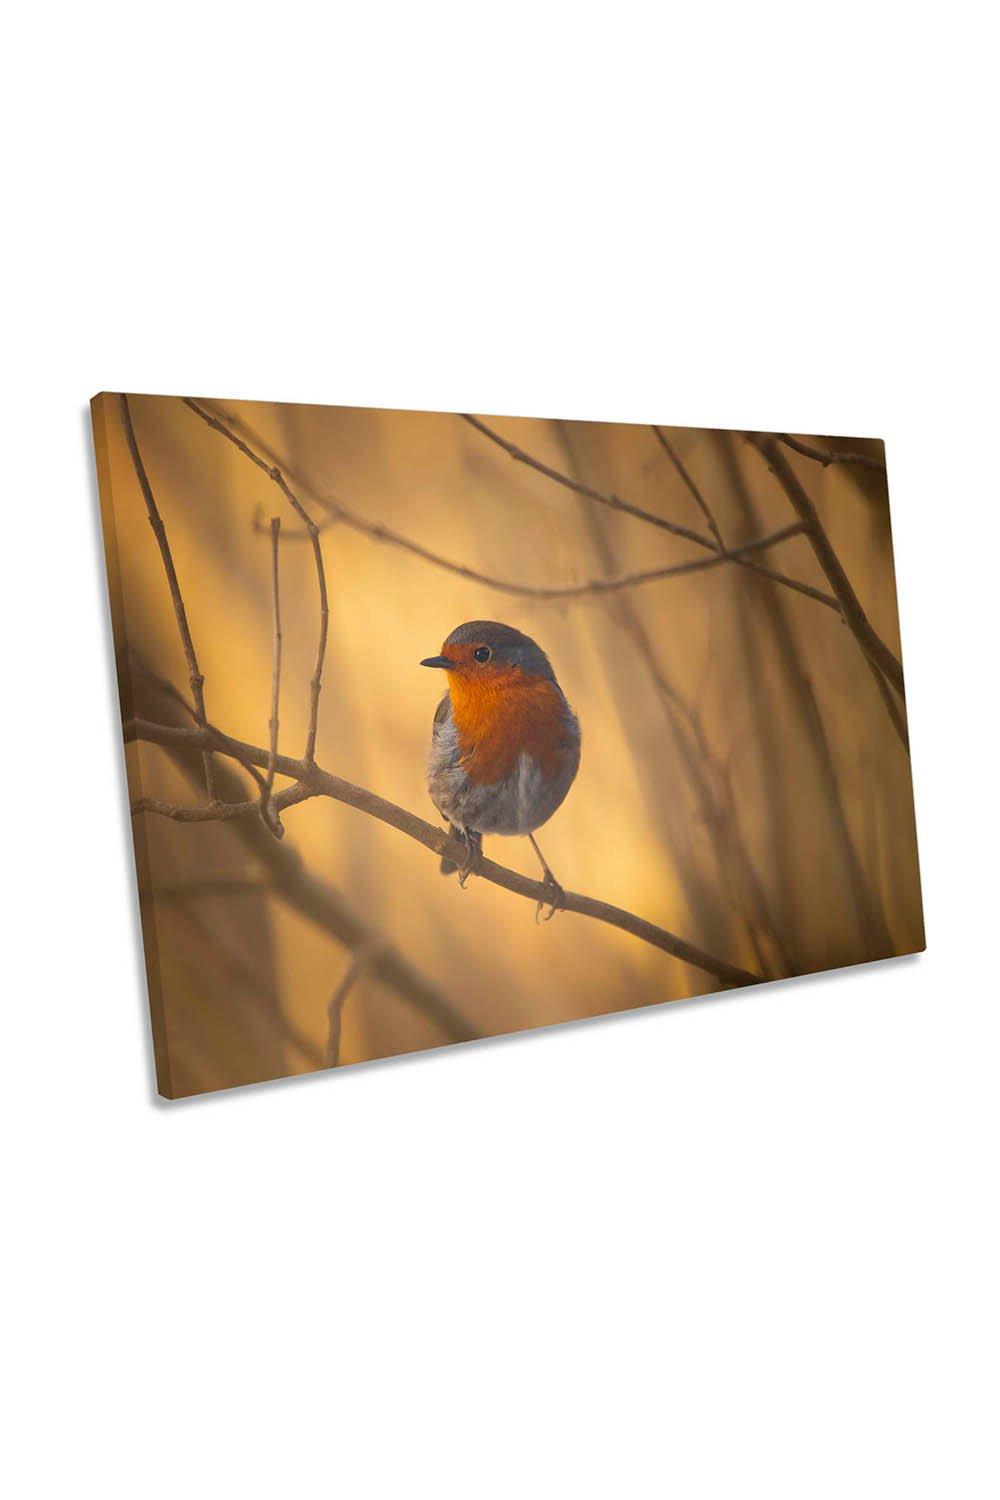 Robin Bird Sunset Canvas Wall Art Picture Print